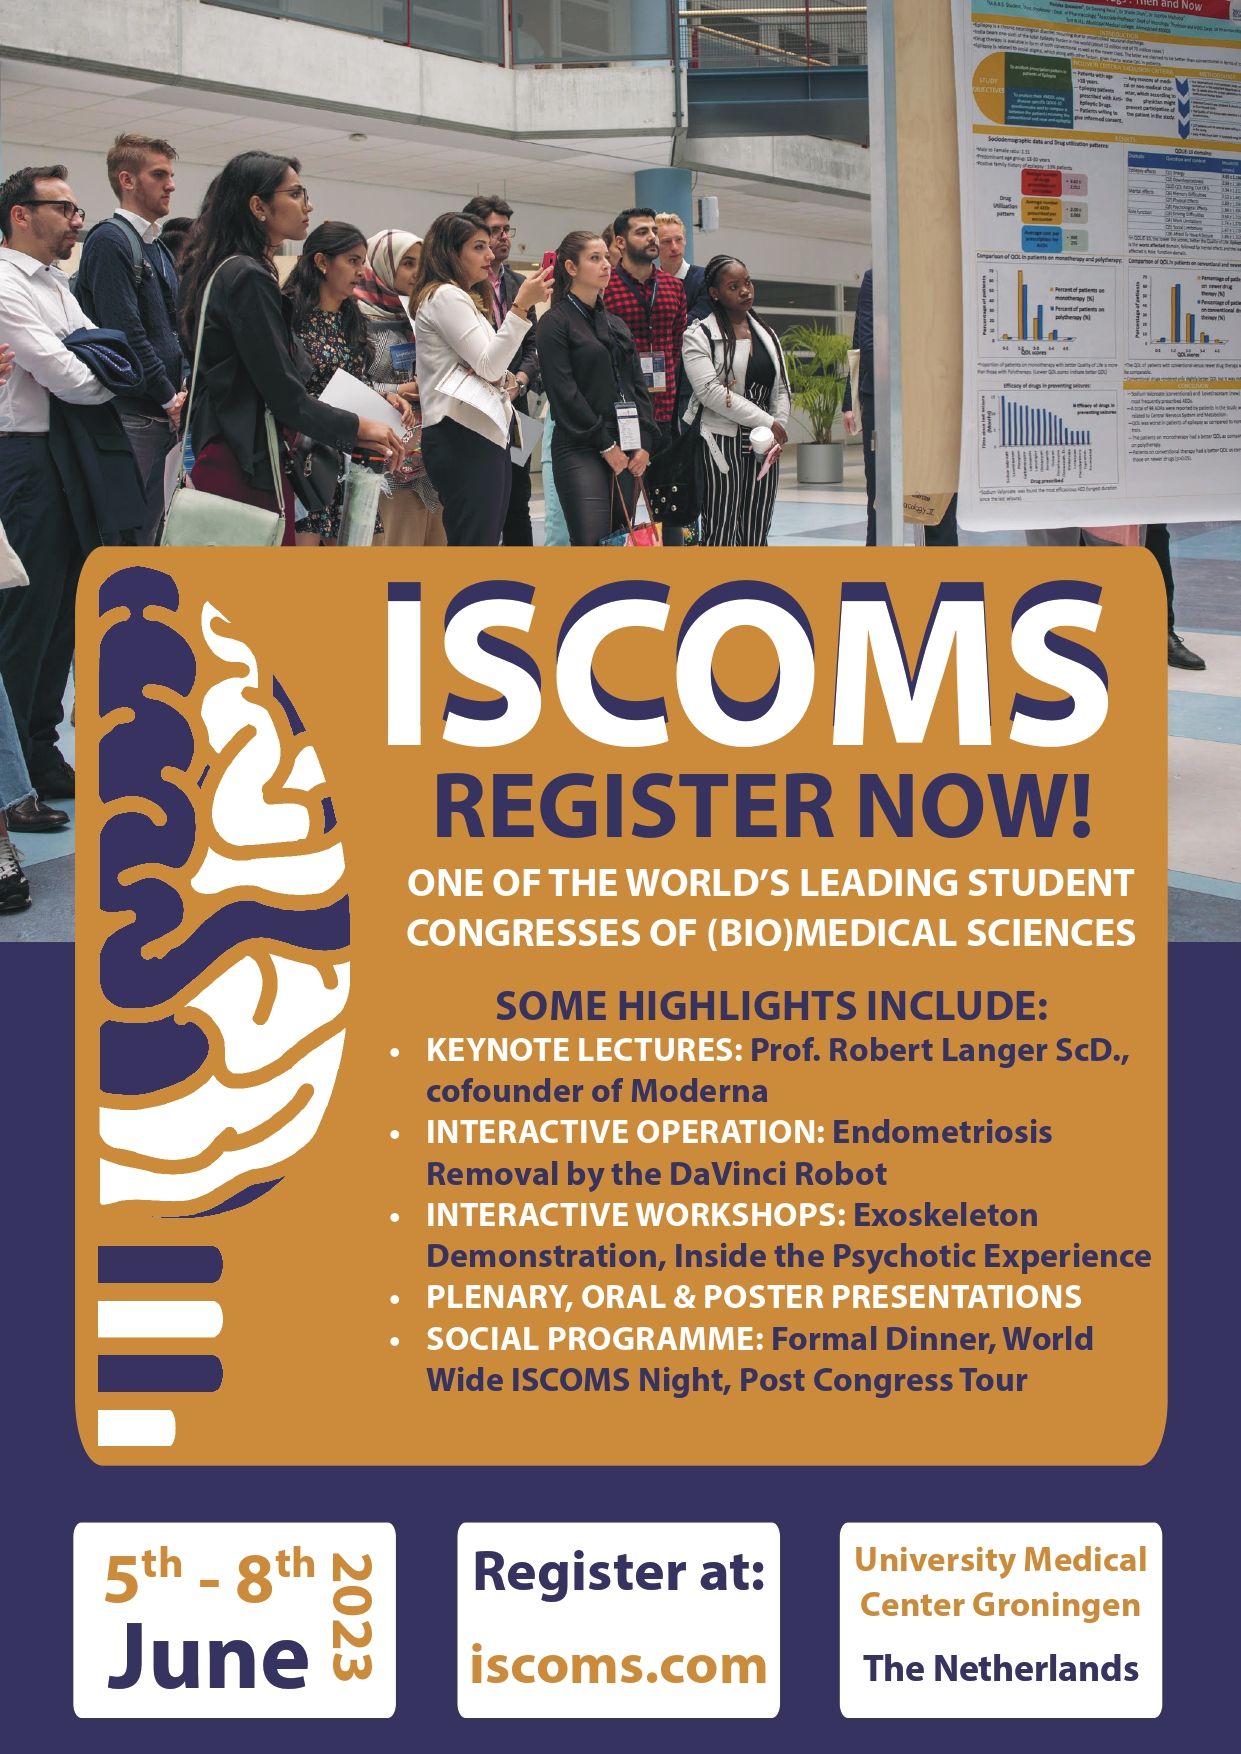 ISCOMS Registrations Open